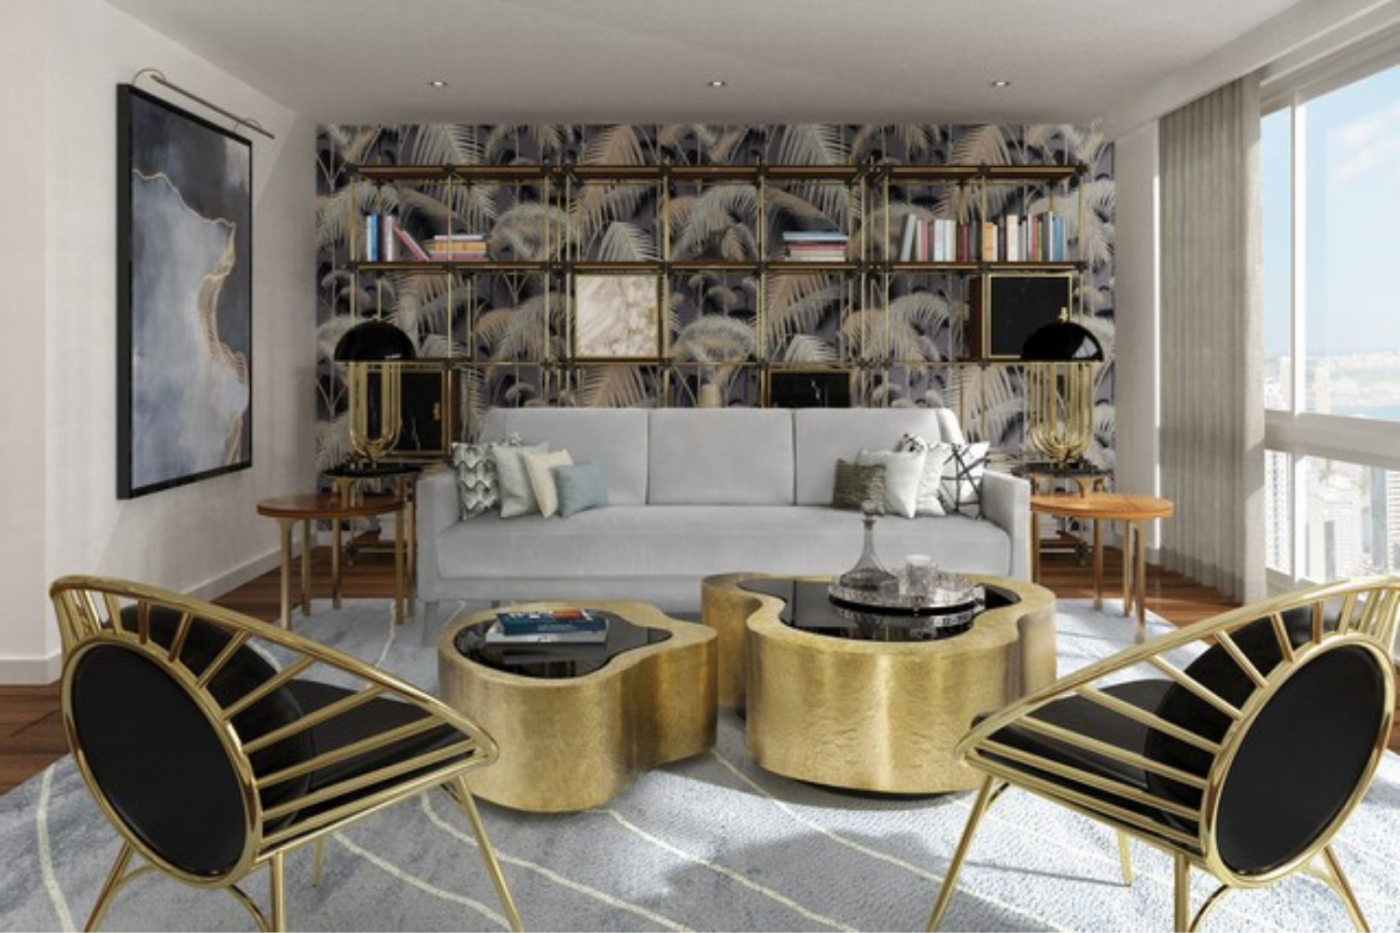 Best Interior Designs Inspired by Luxury Restaurants